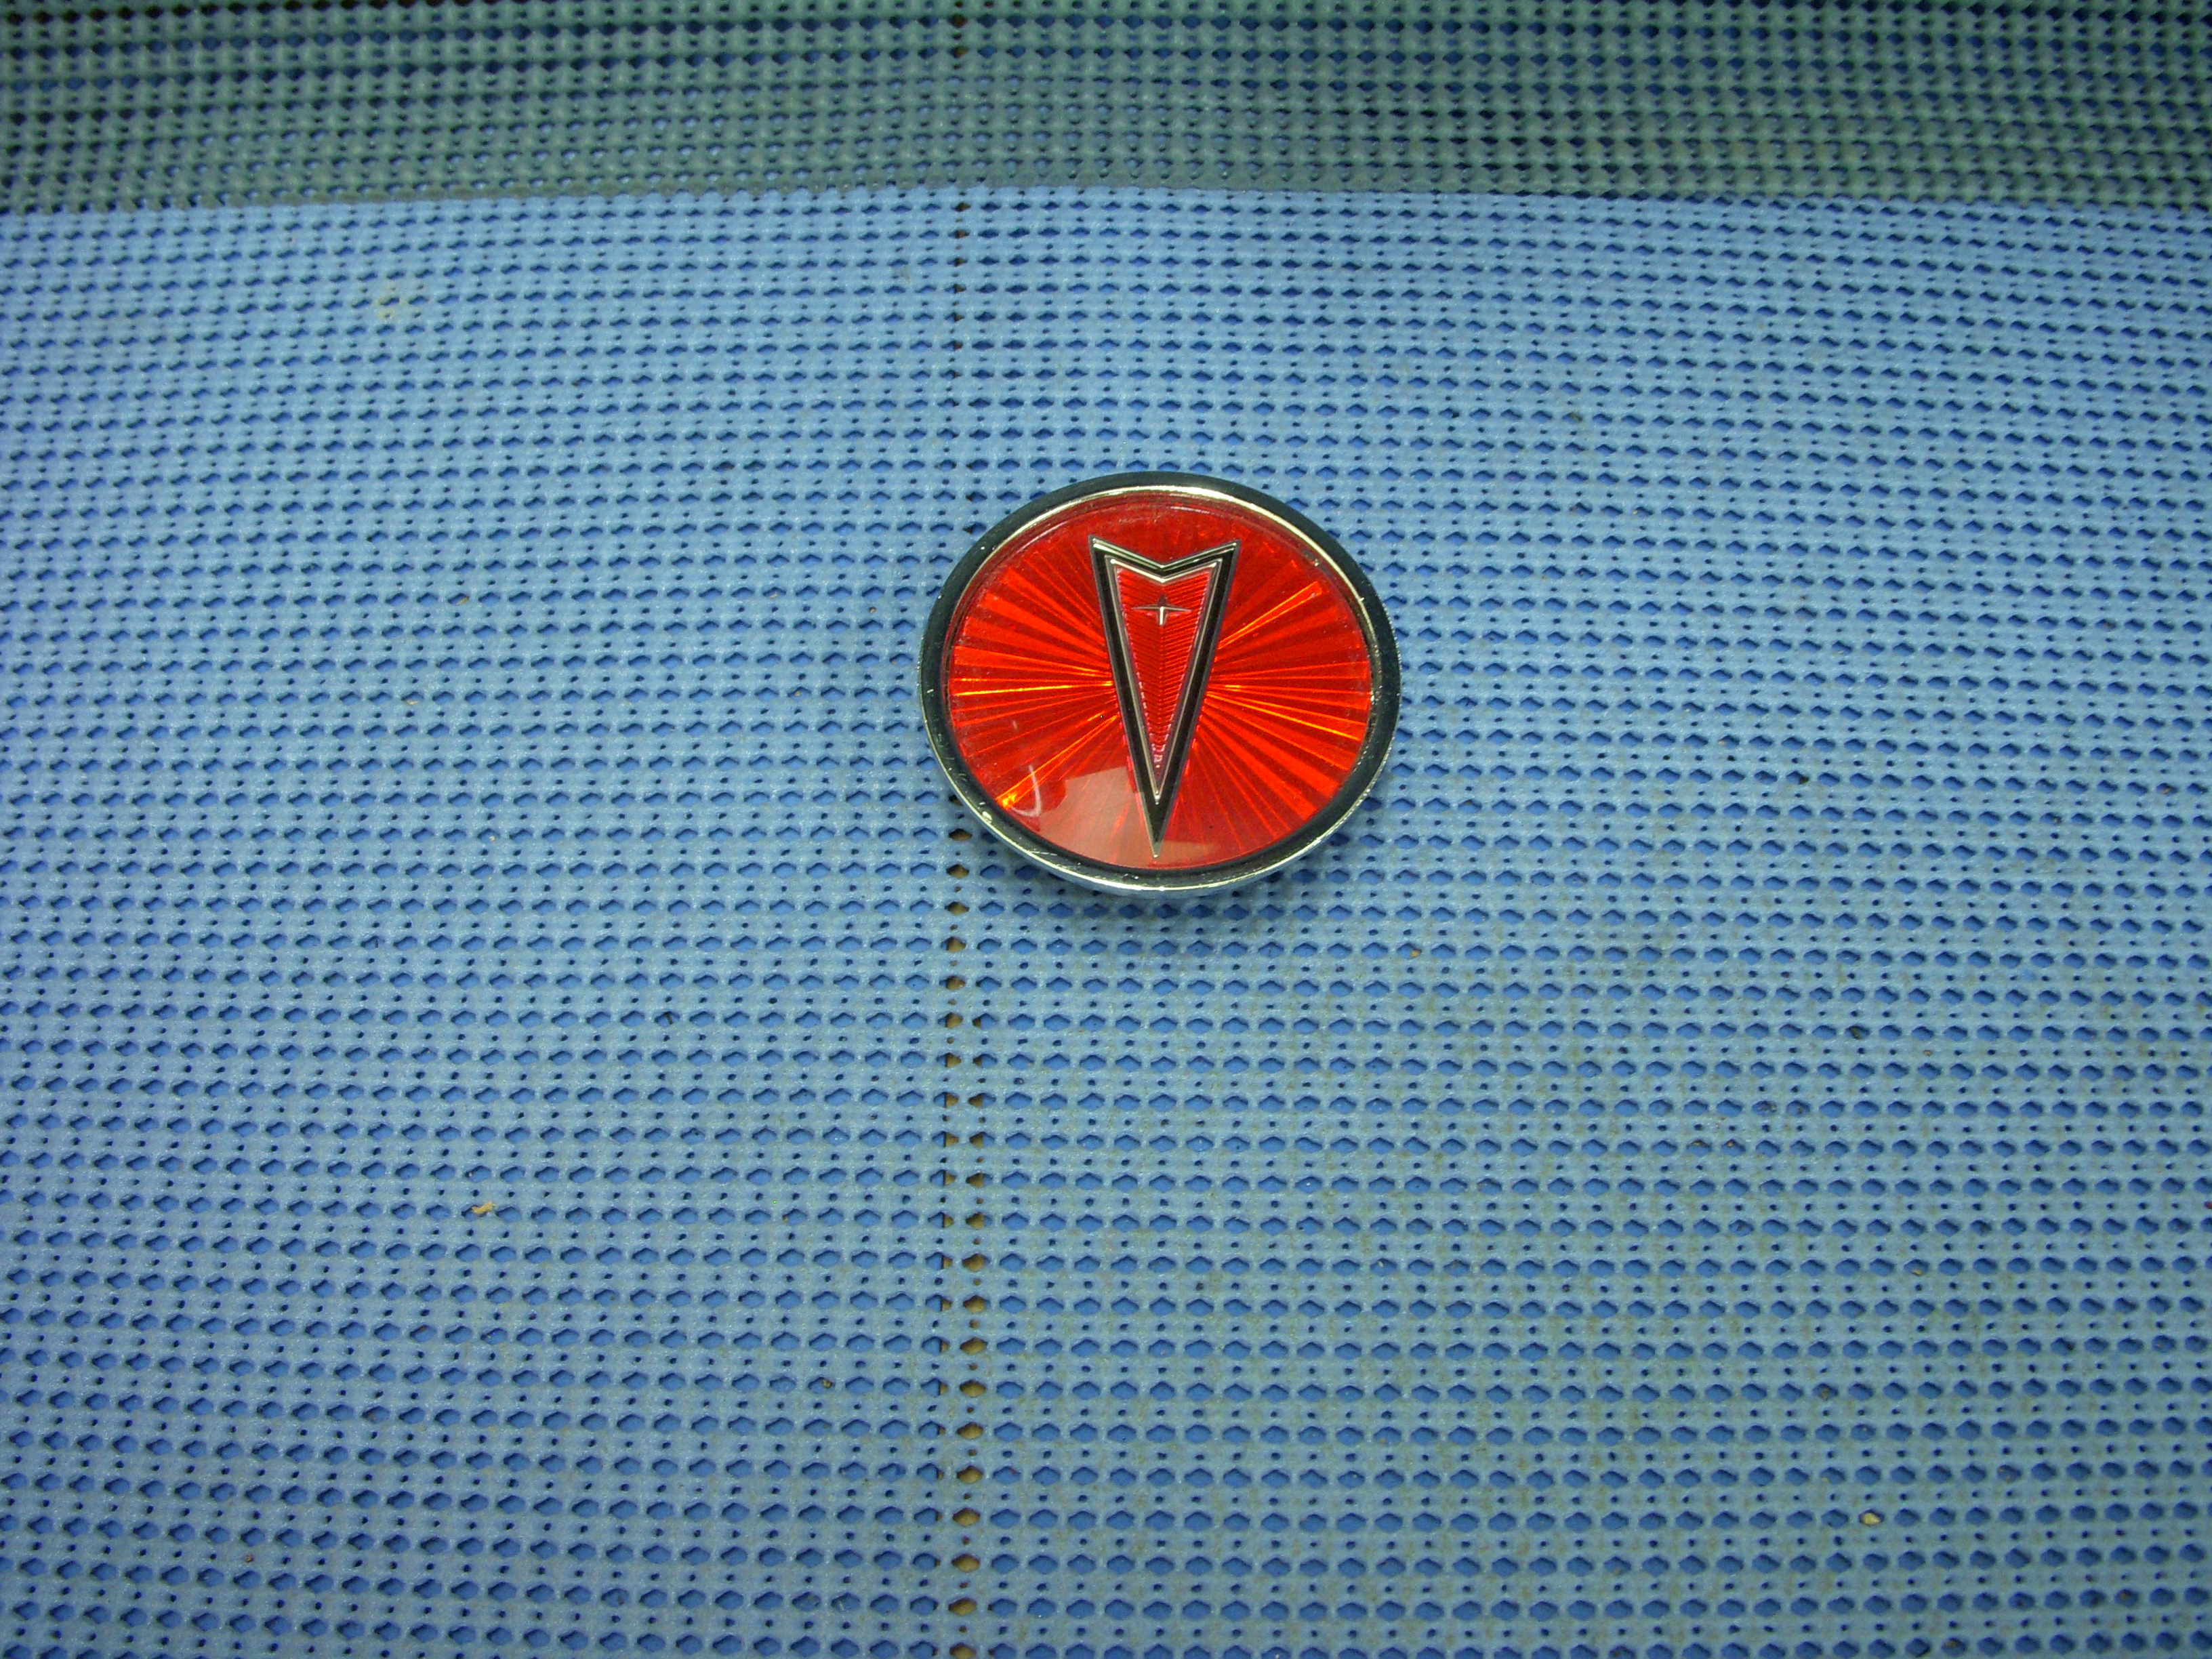 1982 - 1984 Pontiac Hub Cap with Medallion NOS # 10014237